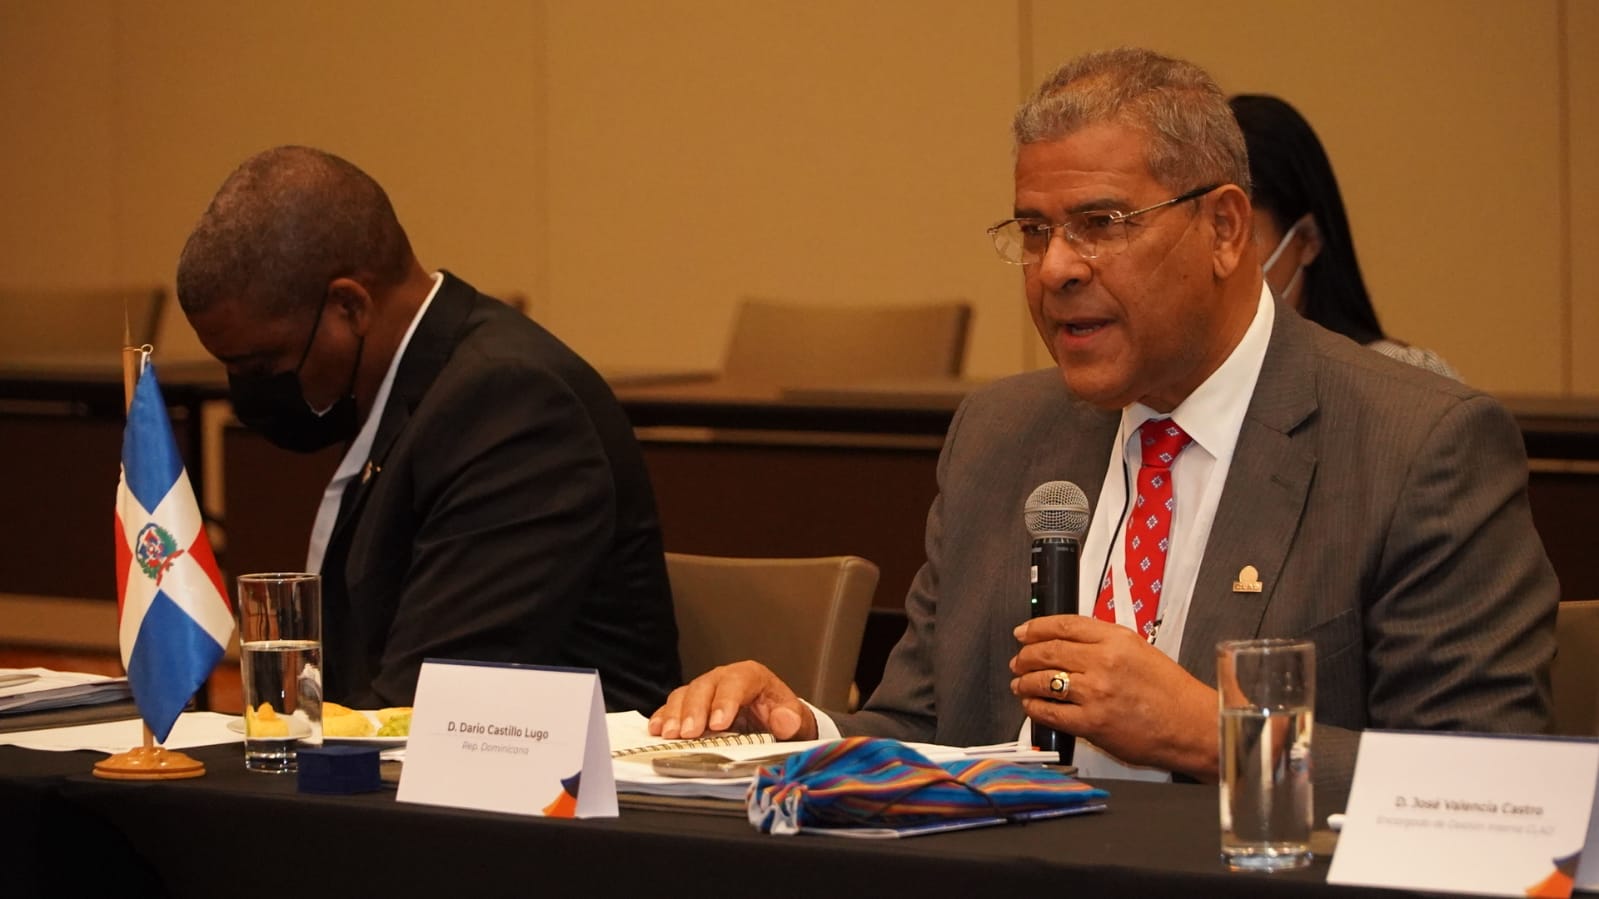 República Dominicana es electa a la Presidencia del Centro Latinoamericano de Administración Para el Desarrollo, CLAD